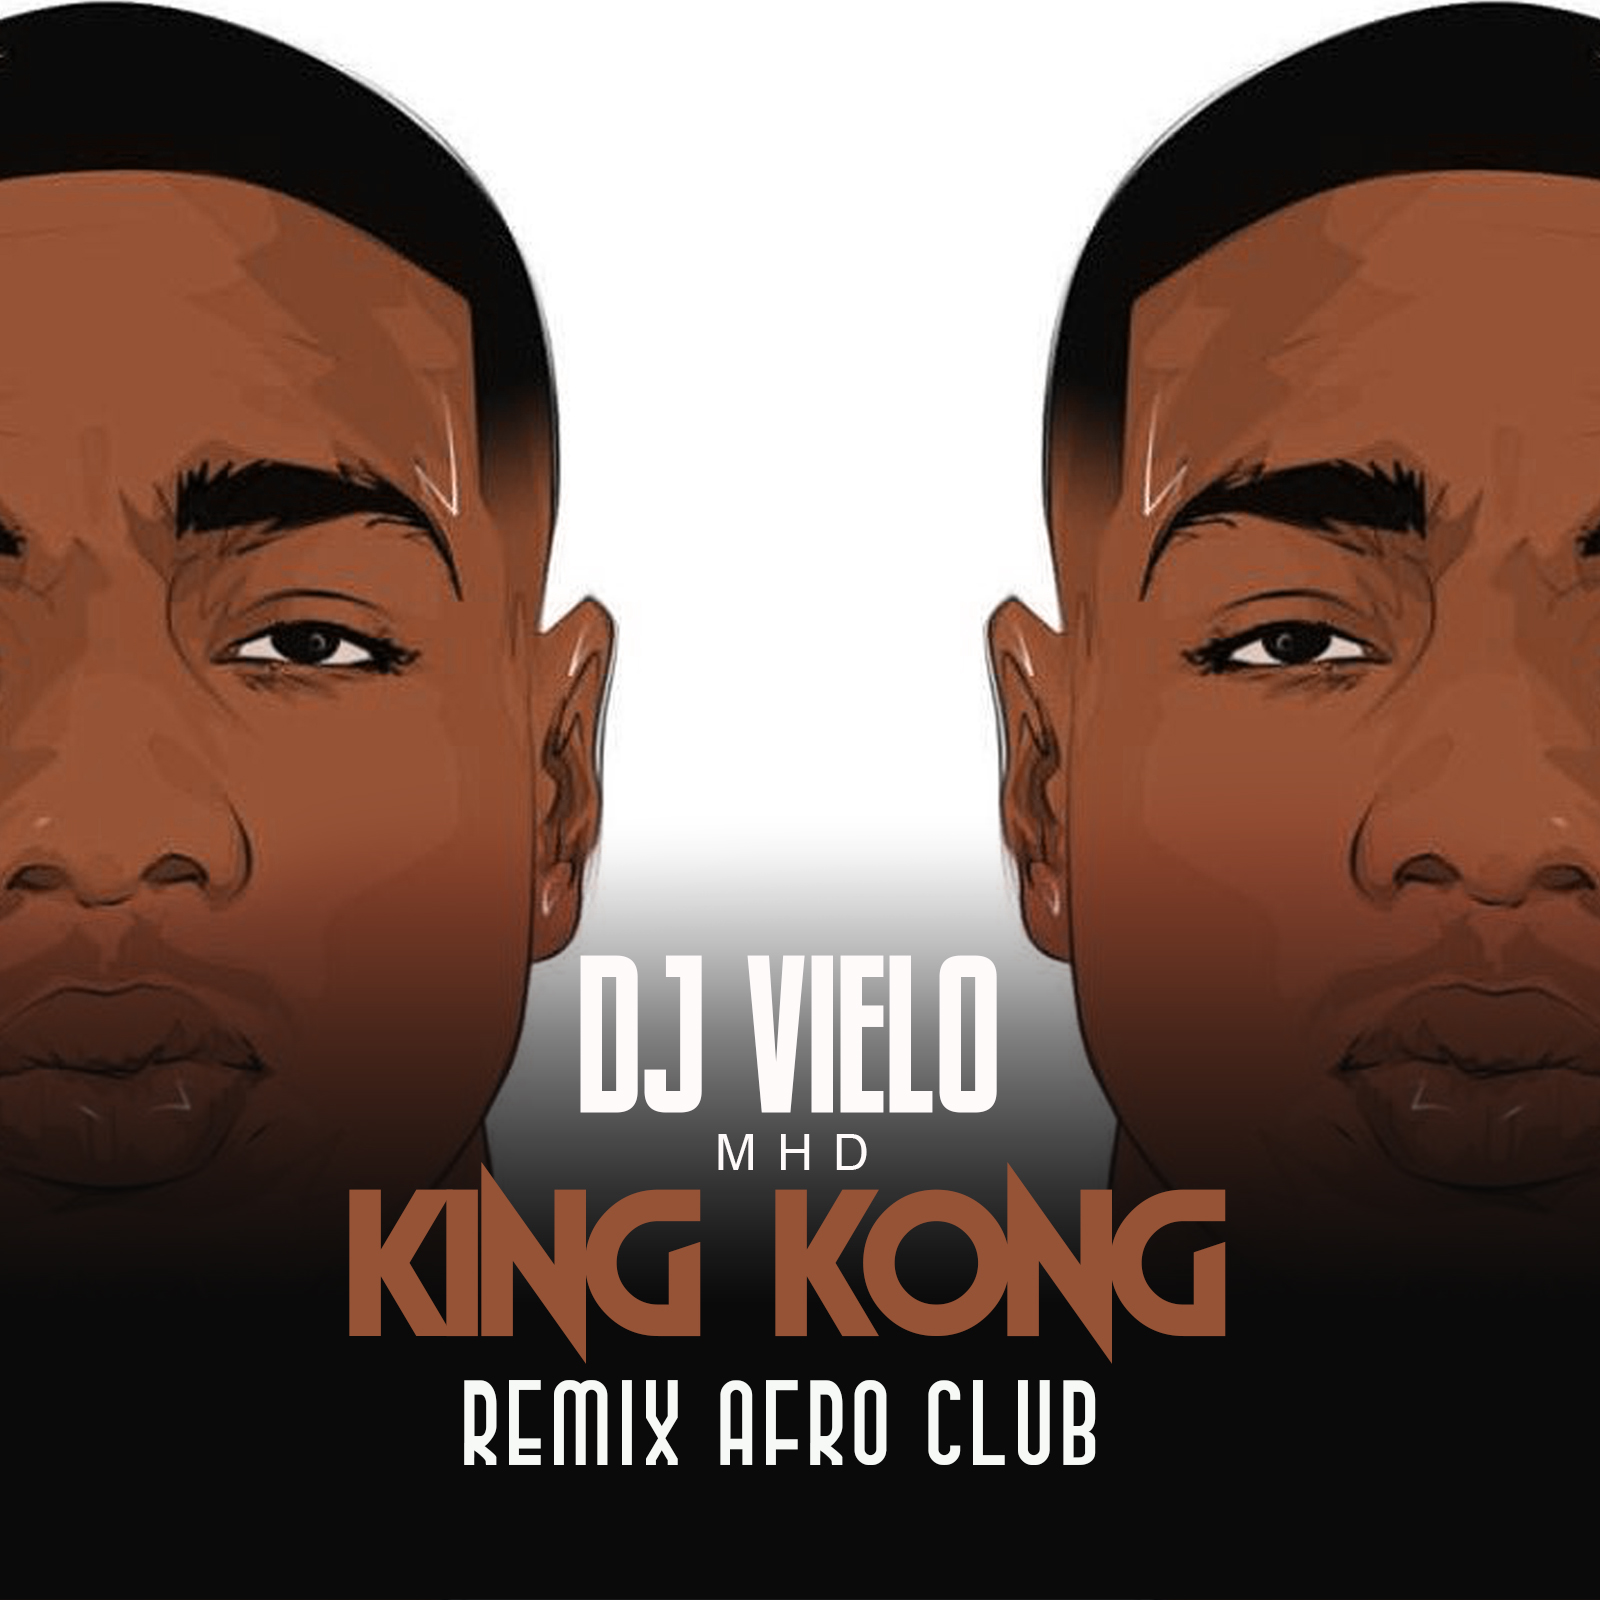 ਡਾਉਨਲੋਡ ਕਰੋ Dj Vielo X MHD - AFRO TRAP Part.11 (King Kong) Remix Afro Club DISPO SUR SPOTIFY, DEEZER, ITUNES